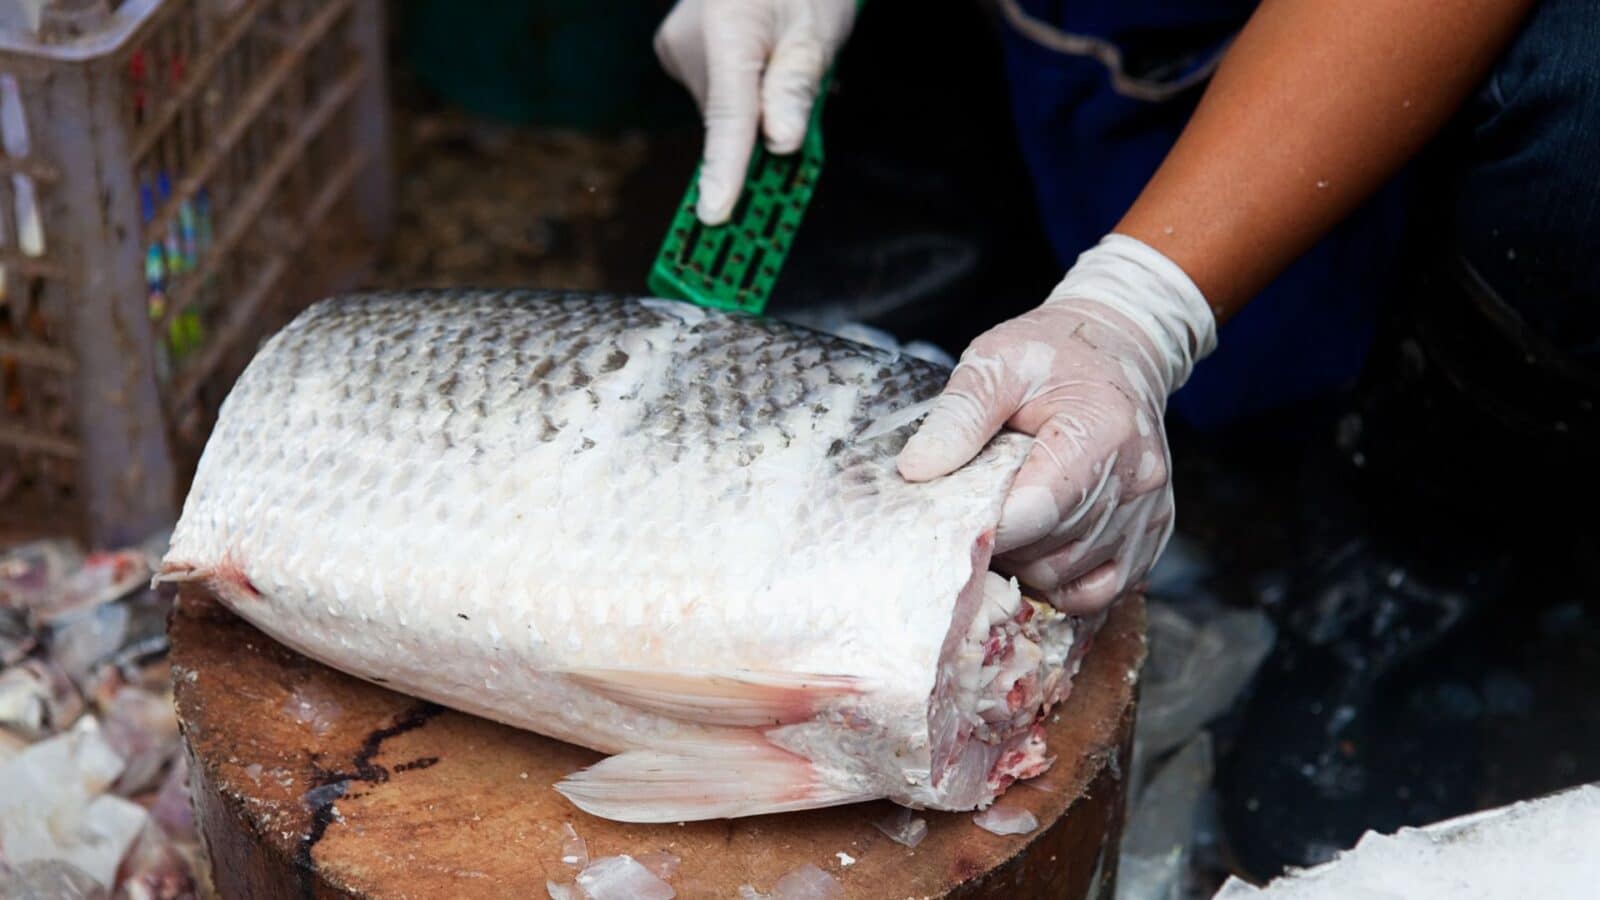 Indea intensifica fiscalização durante Semana Santa para garantir segurança alimentar no comércio de peixes